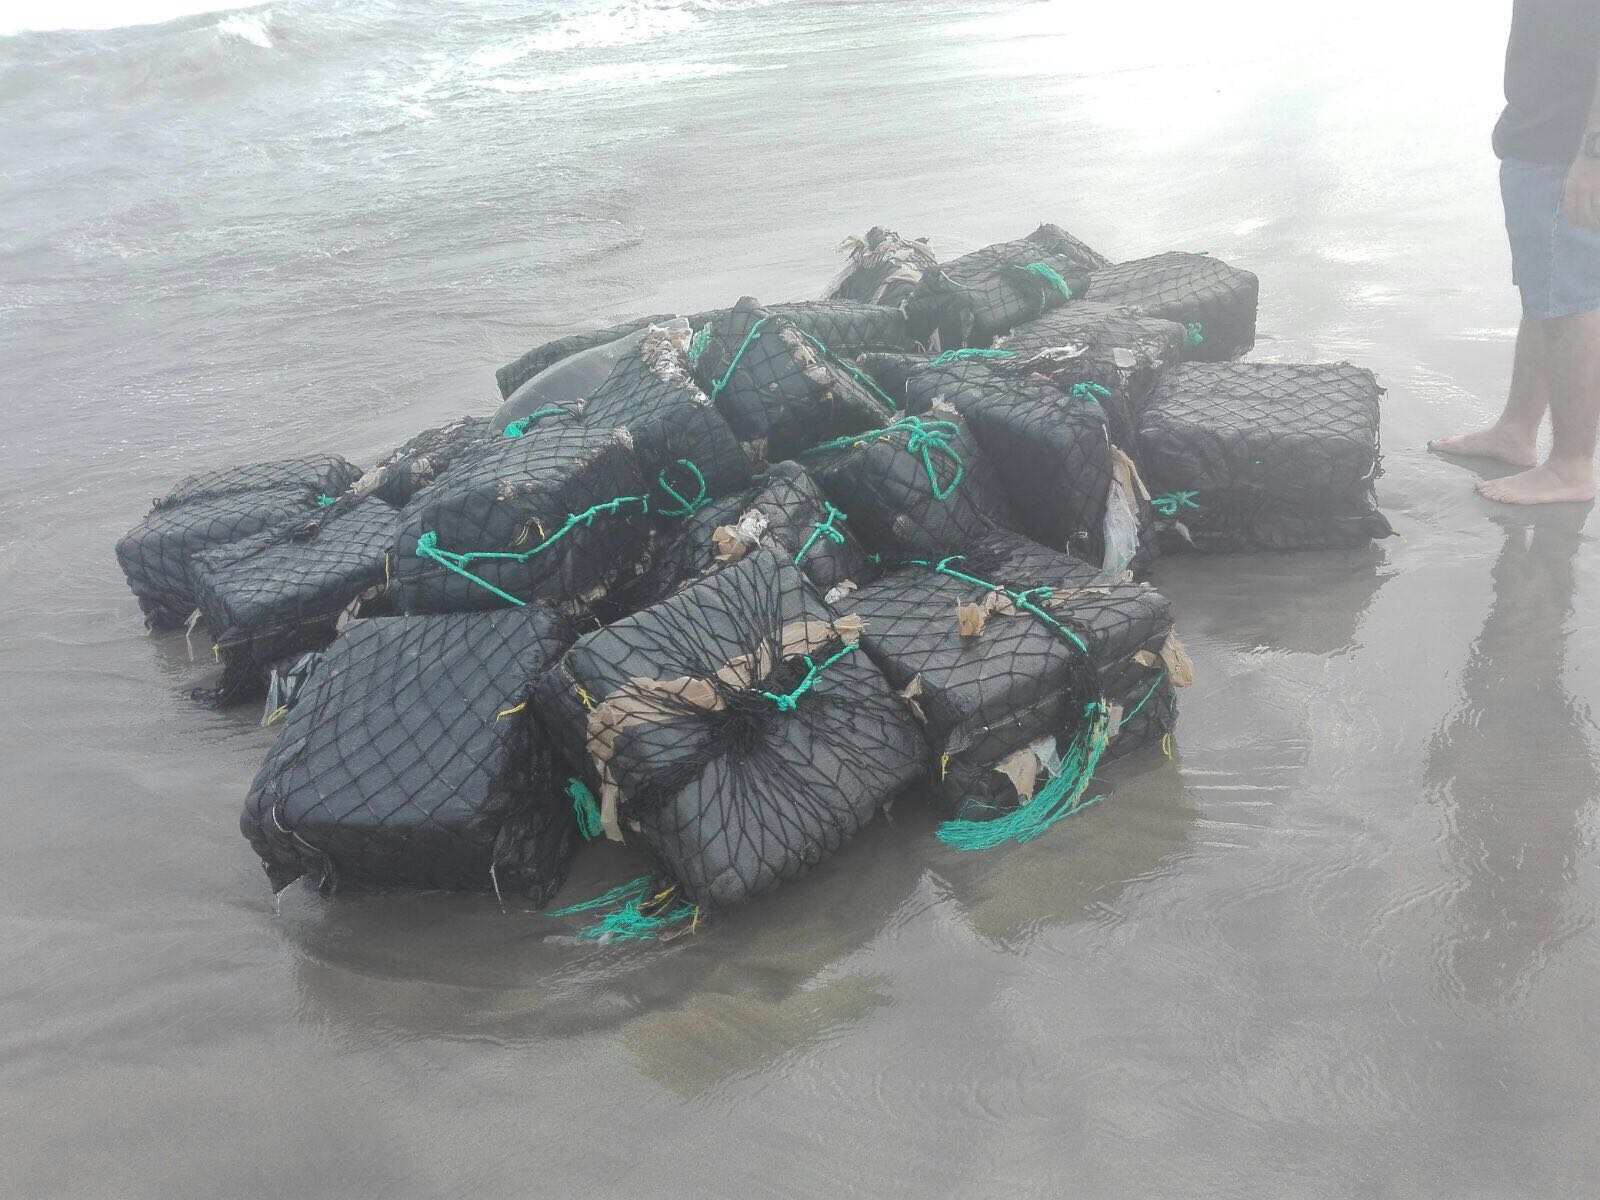 Cocaína encontrada en la playa de Barra Vieja en Acapulco